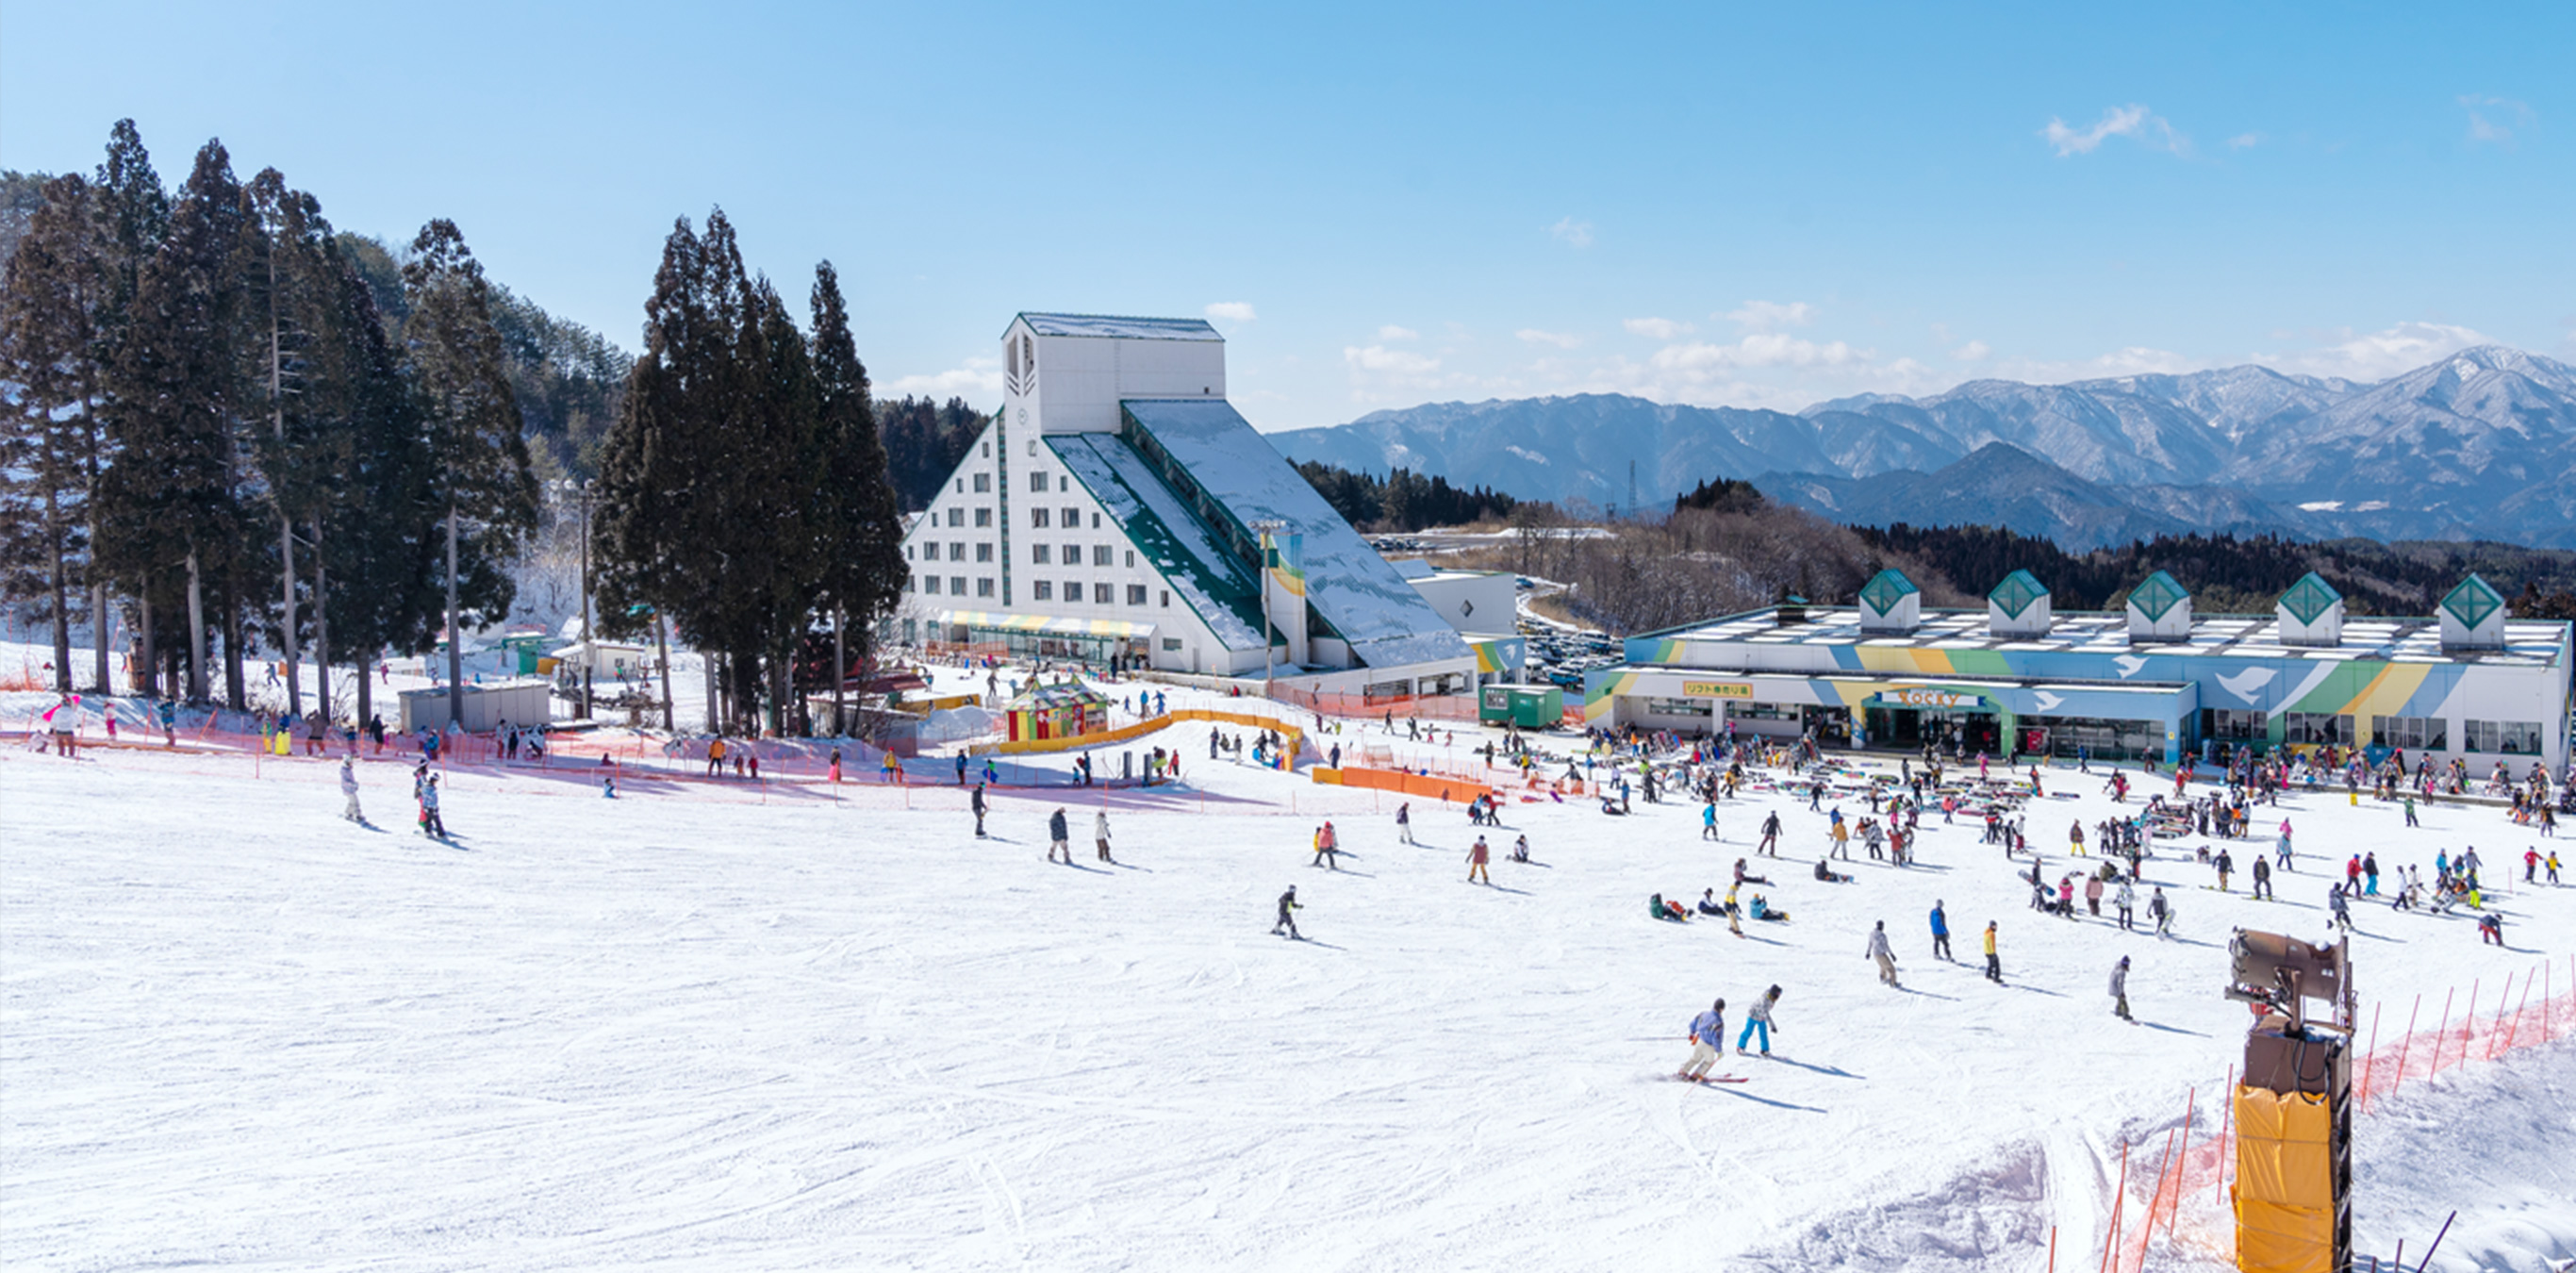 Takasu Area Washigatake Ski Resort